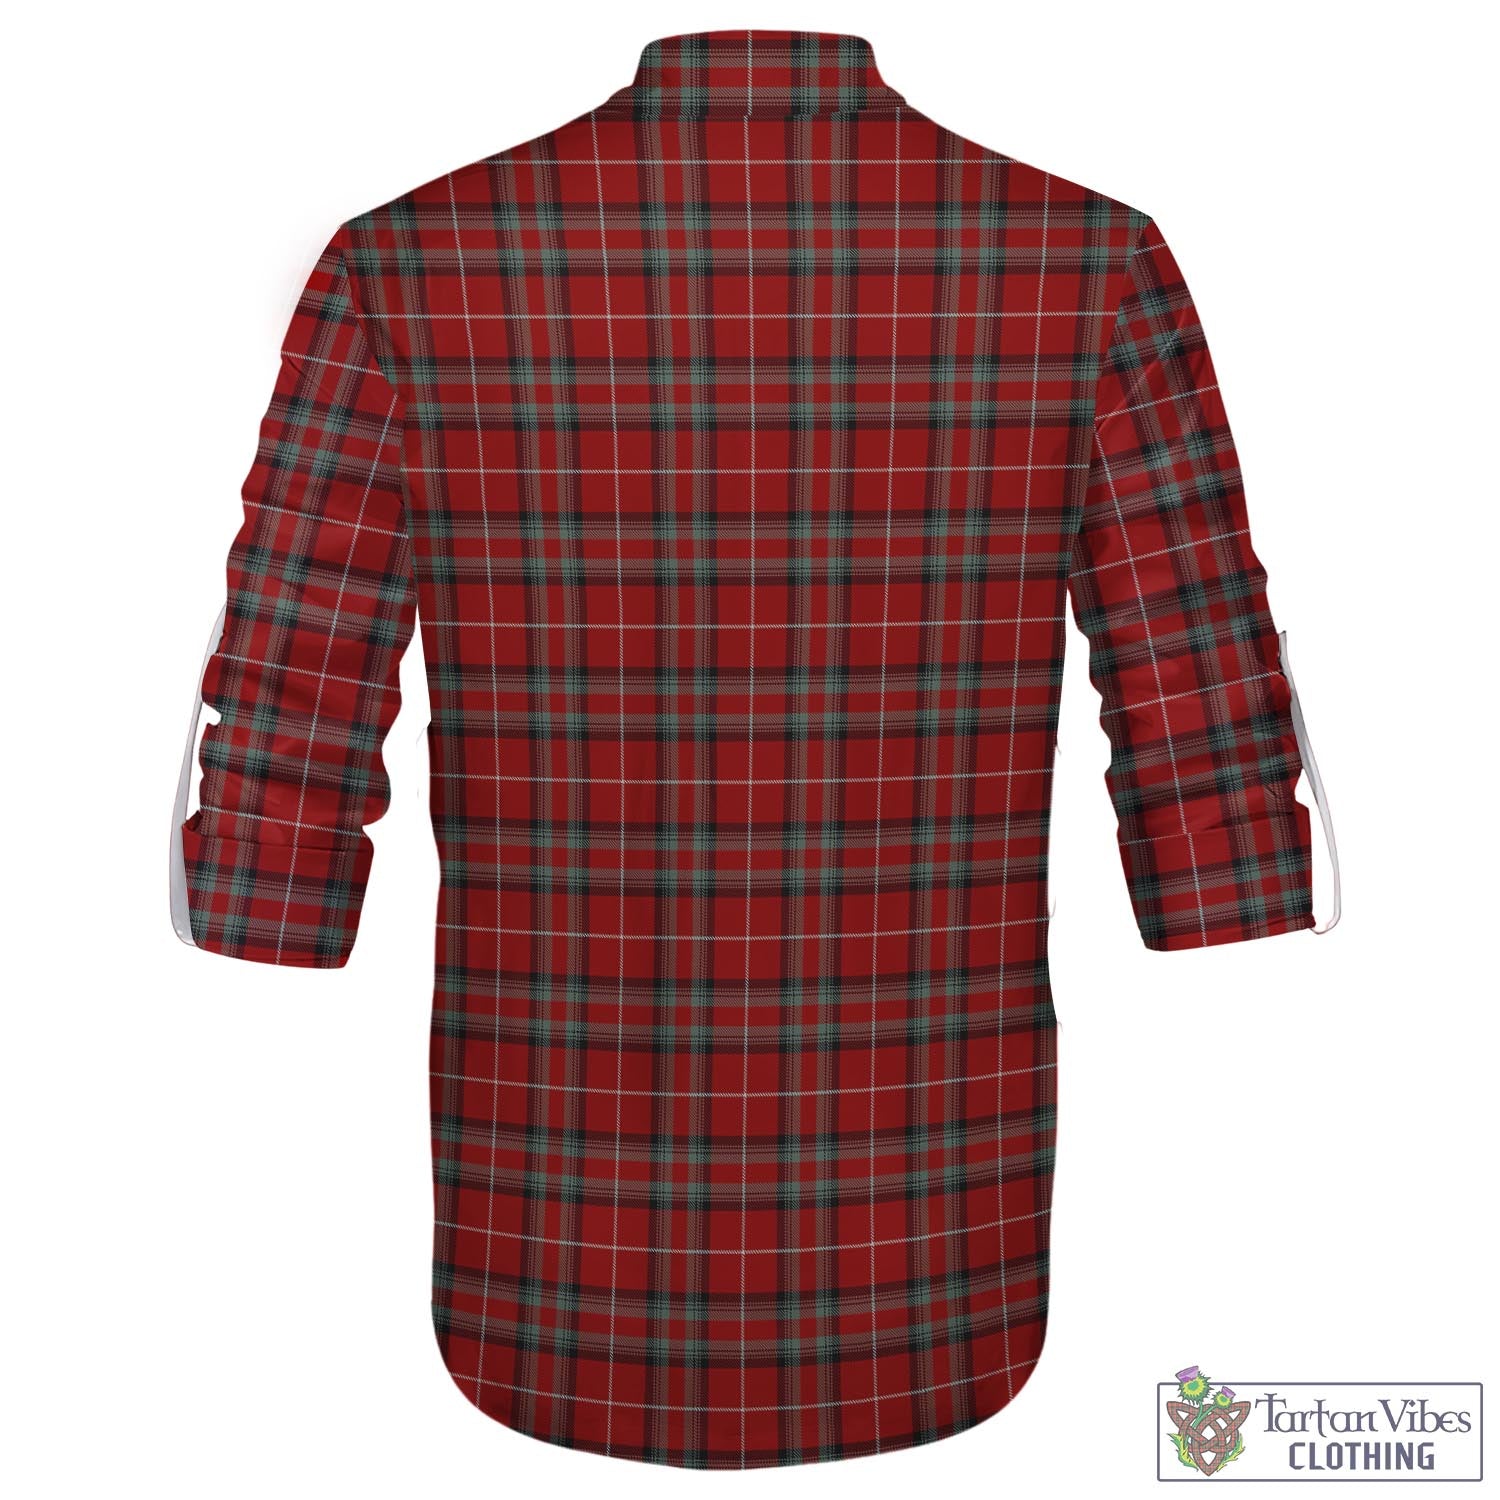 Tartan Vibes Clothing Stuart of Bute Tartan Men's Scottish Traditional Jacobite Ghillie Kilt Shirt